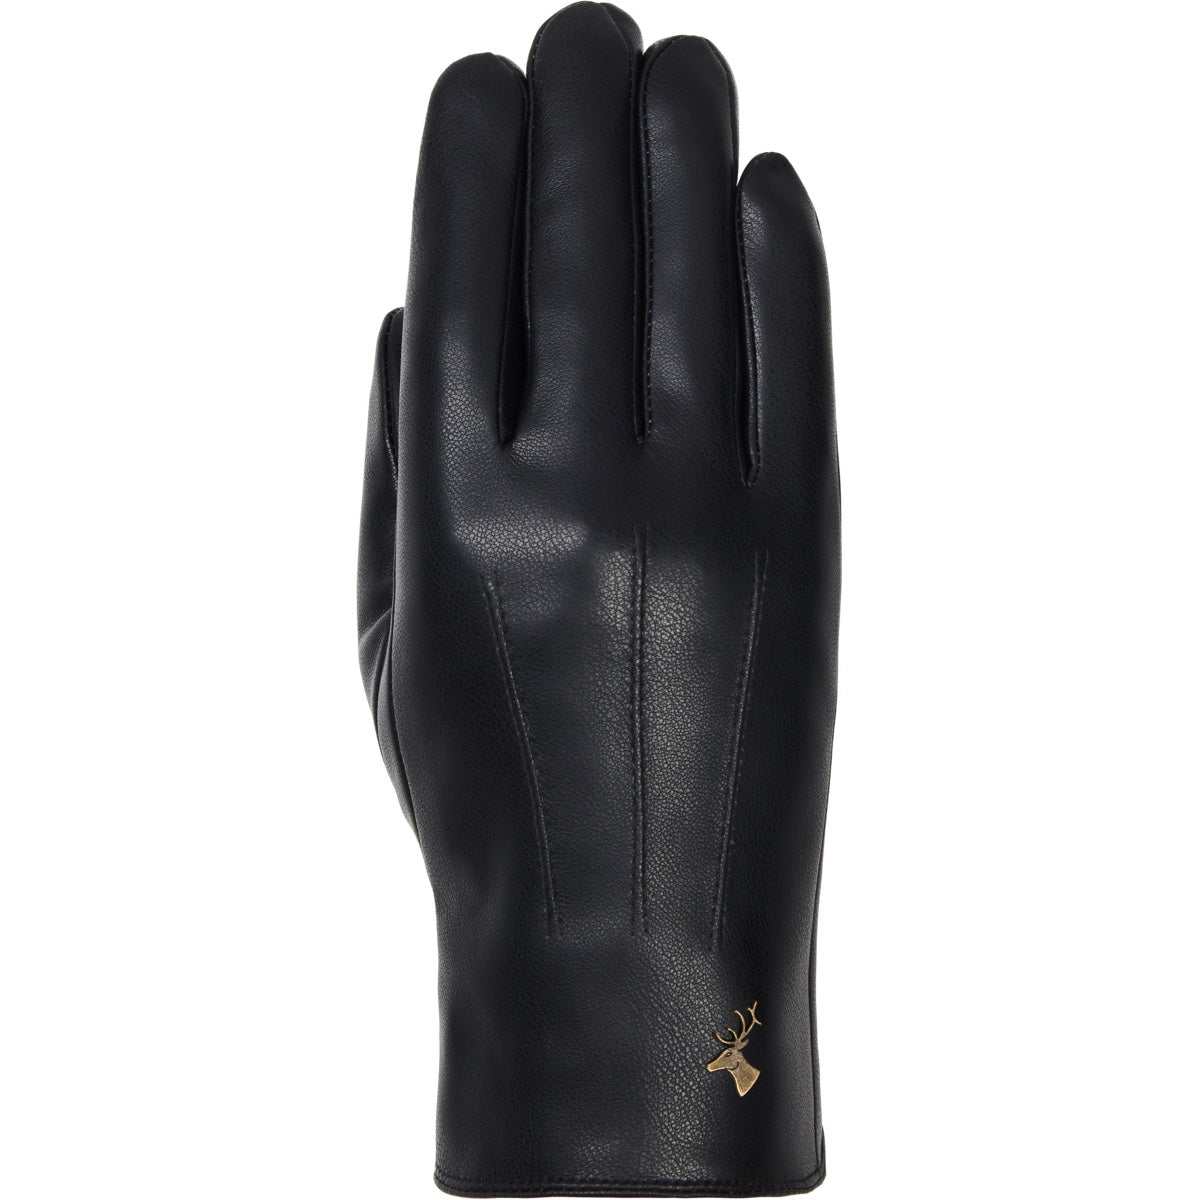 Vegan Leather Gloves Men Black Musk - Schwartz & von Halen® - Premium Leather Gloves - 1